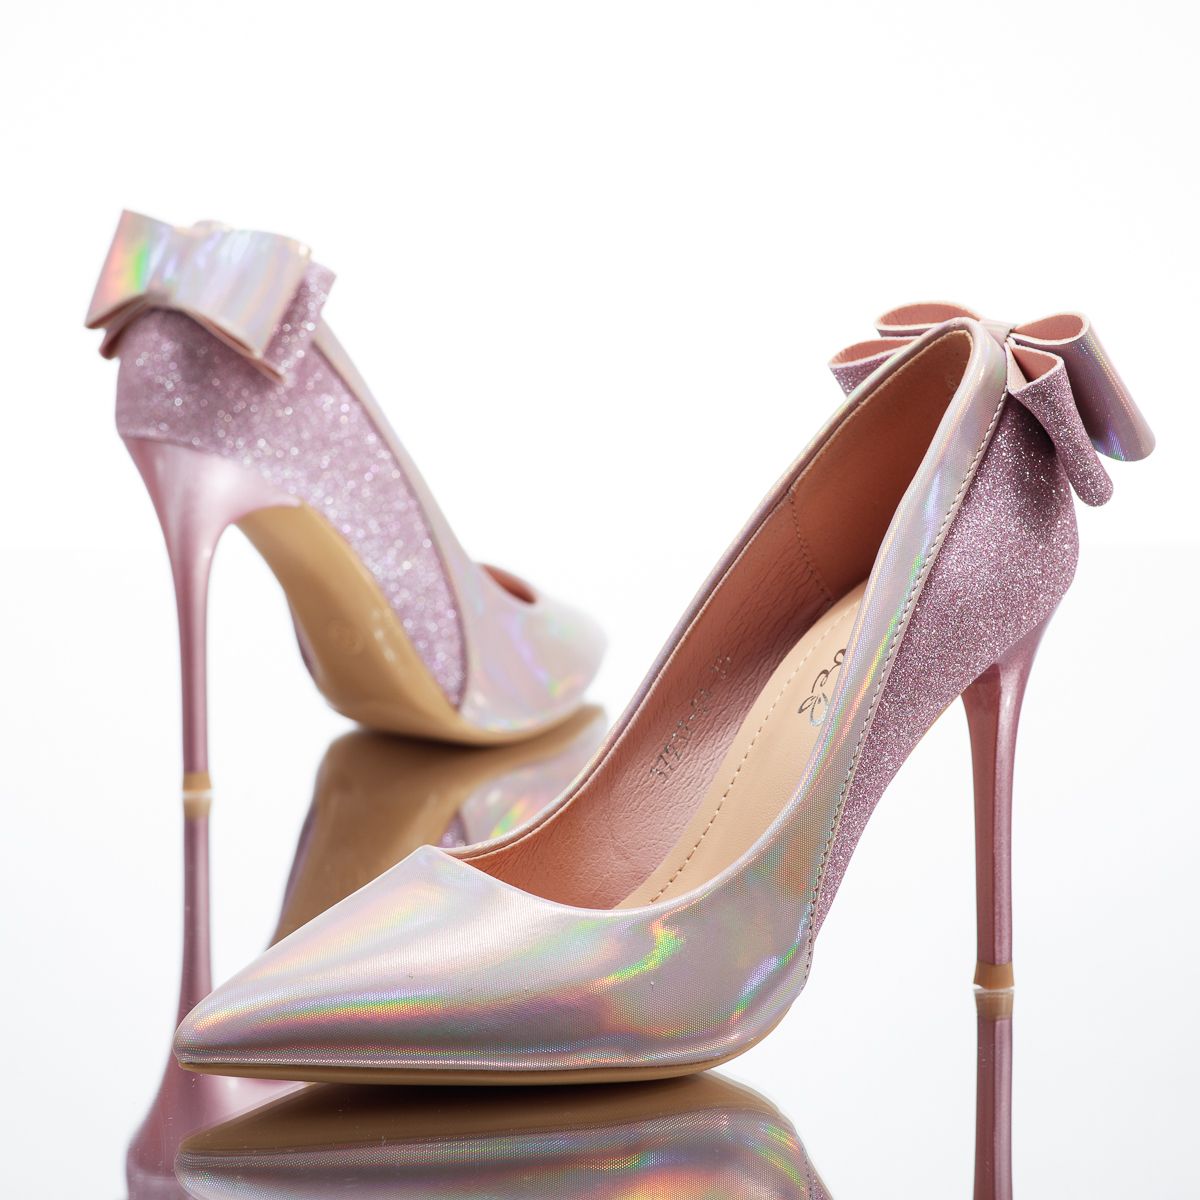 Pantofi Dama cu Toc  Oxford2 Roz/Aurii #14115